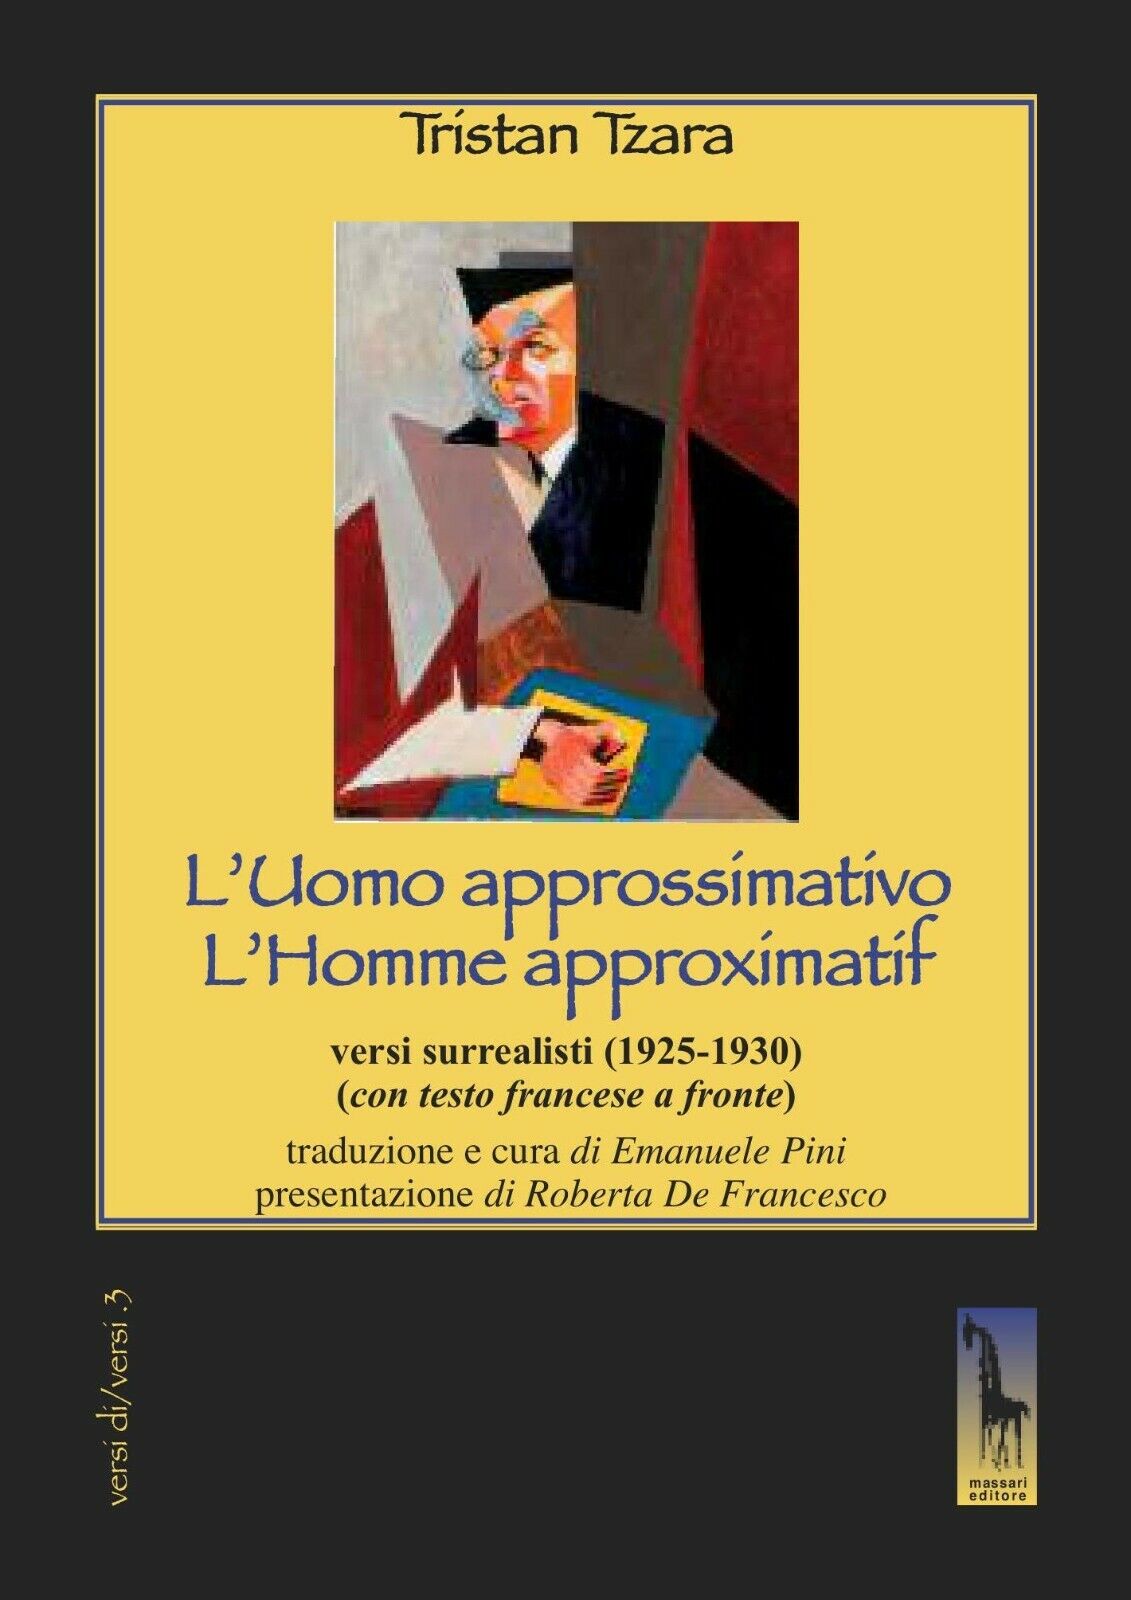 L'uomo approssimativo. Testo francese a fronte di Tristan Tzara,  2019,  Massari